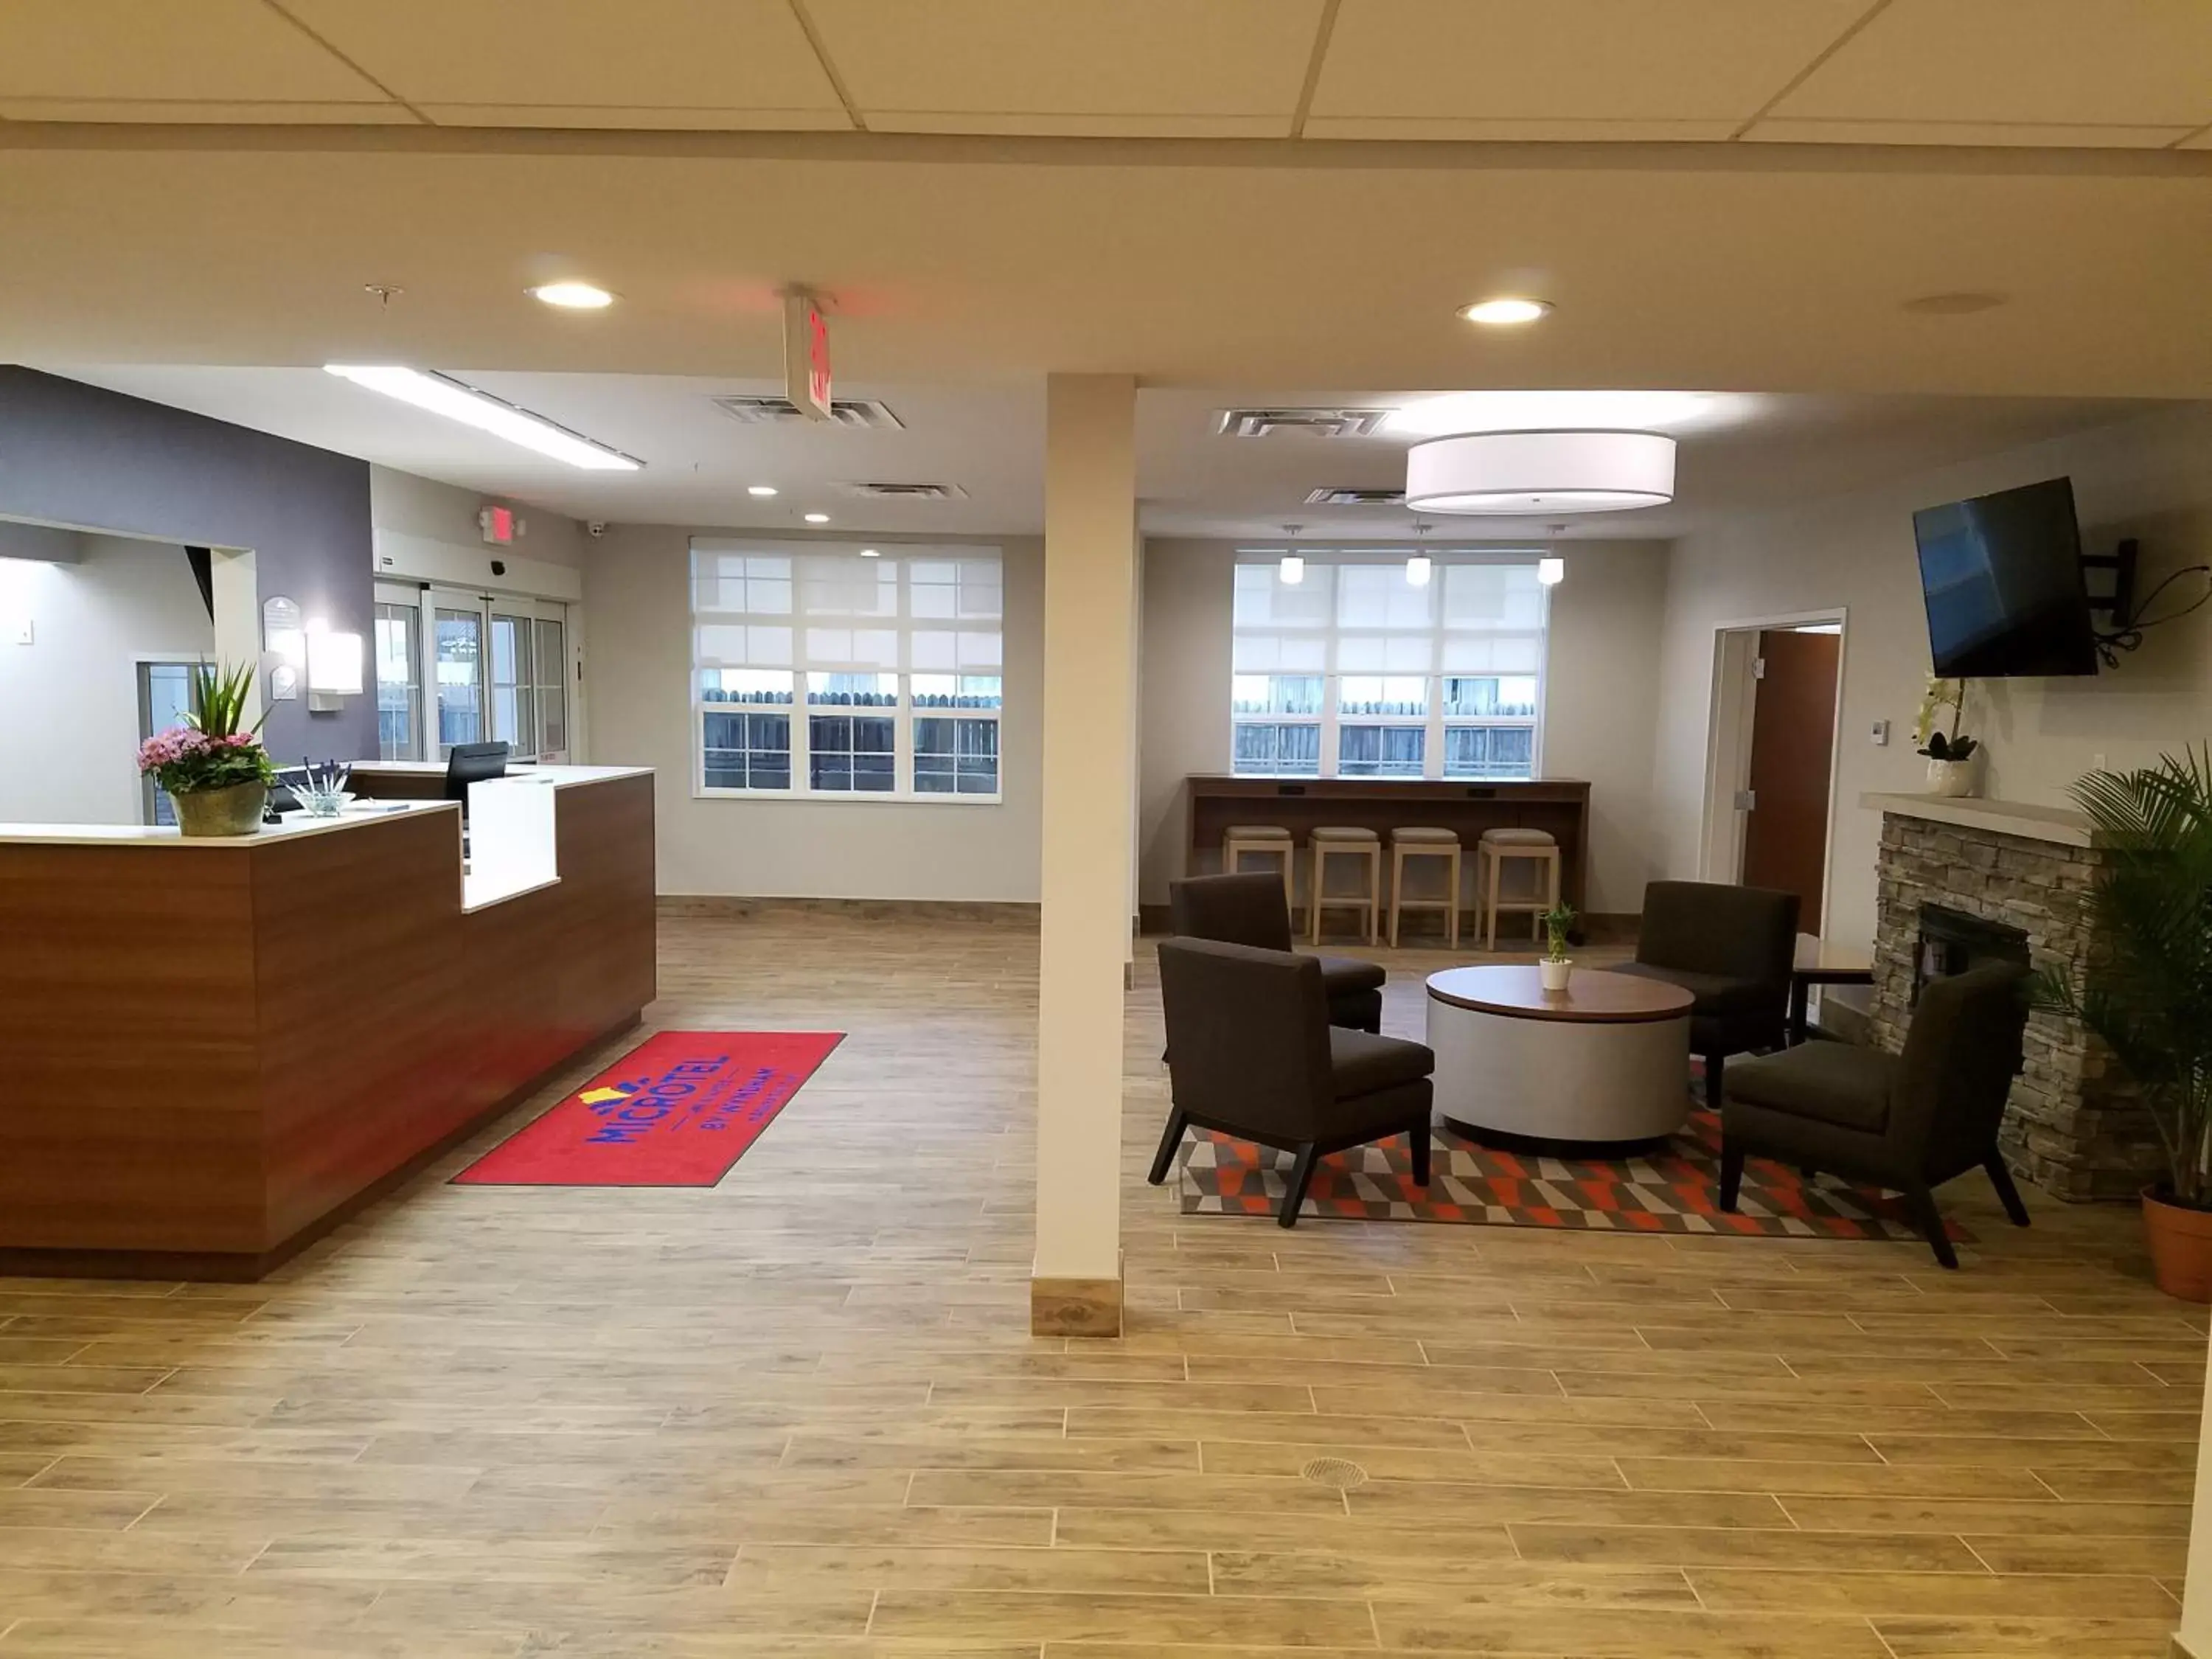 Lobby or reception, Lobby/Reception in Microtel Inn & Suites by Wyndham Niagara Falls